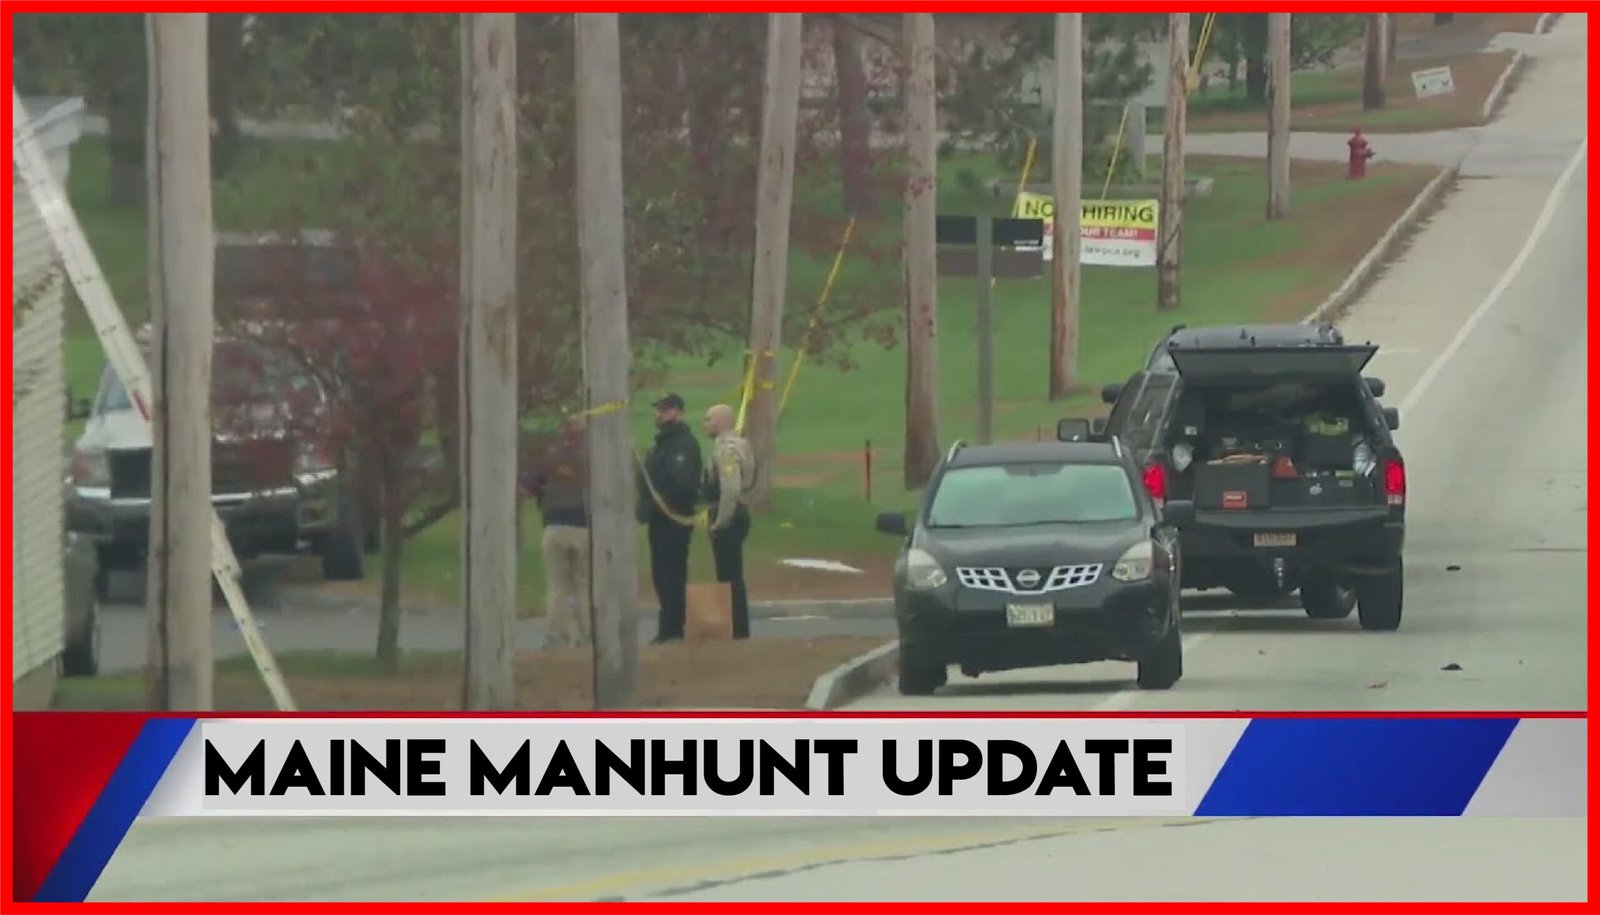 Maine manhunt update